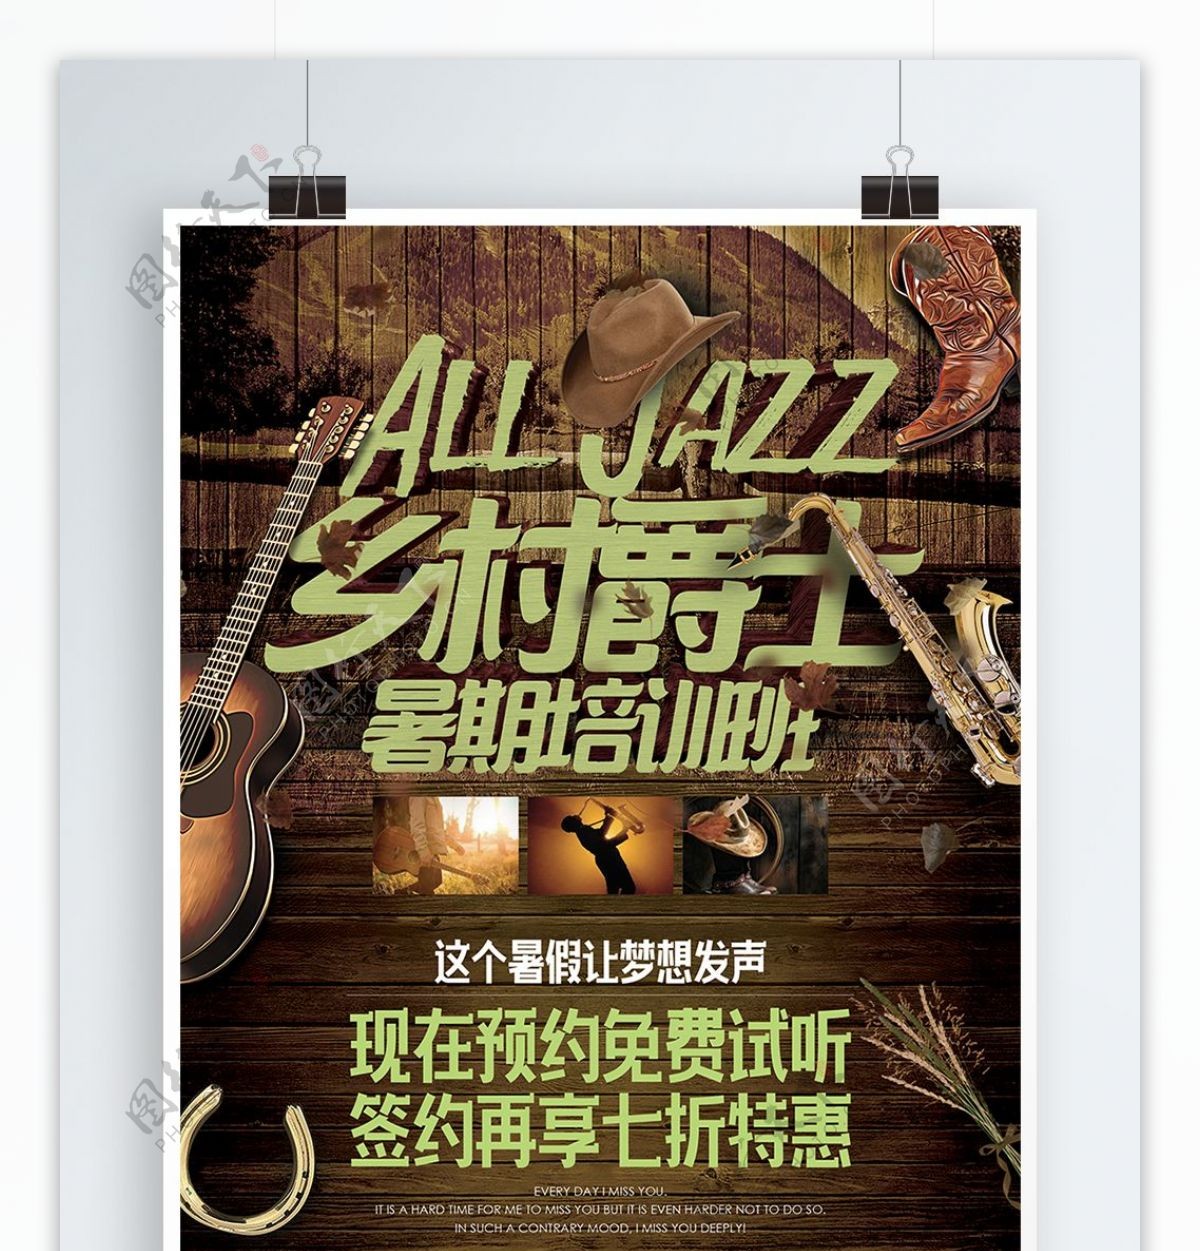 乡村风格爵士乐音乐暑期培训班招生海报